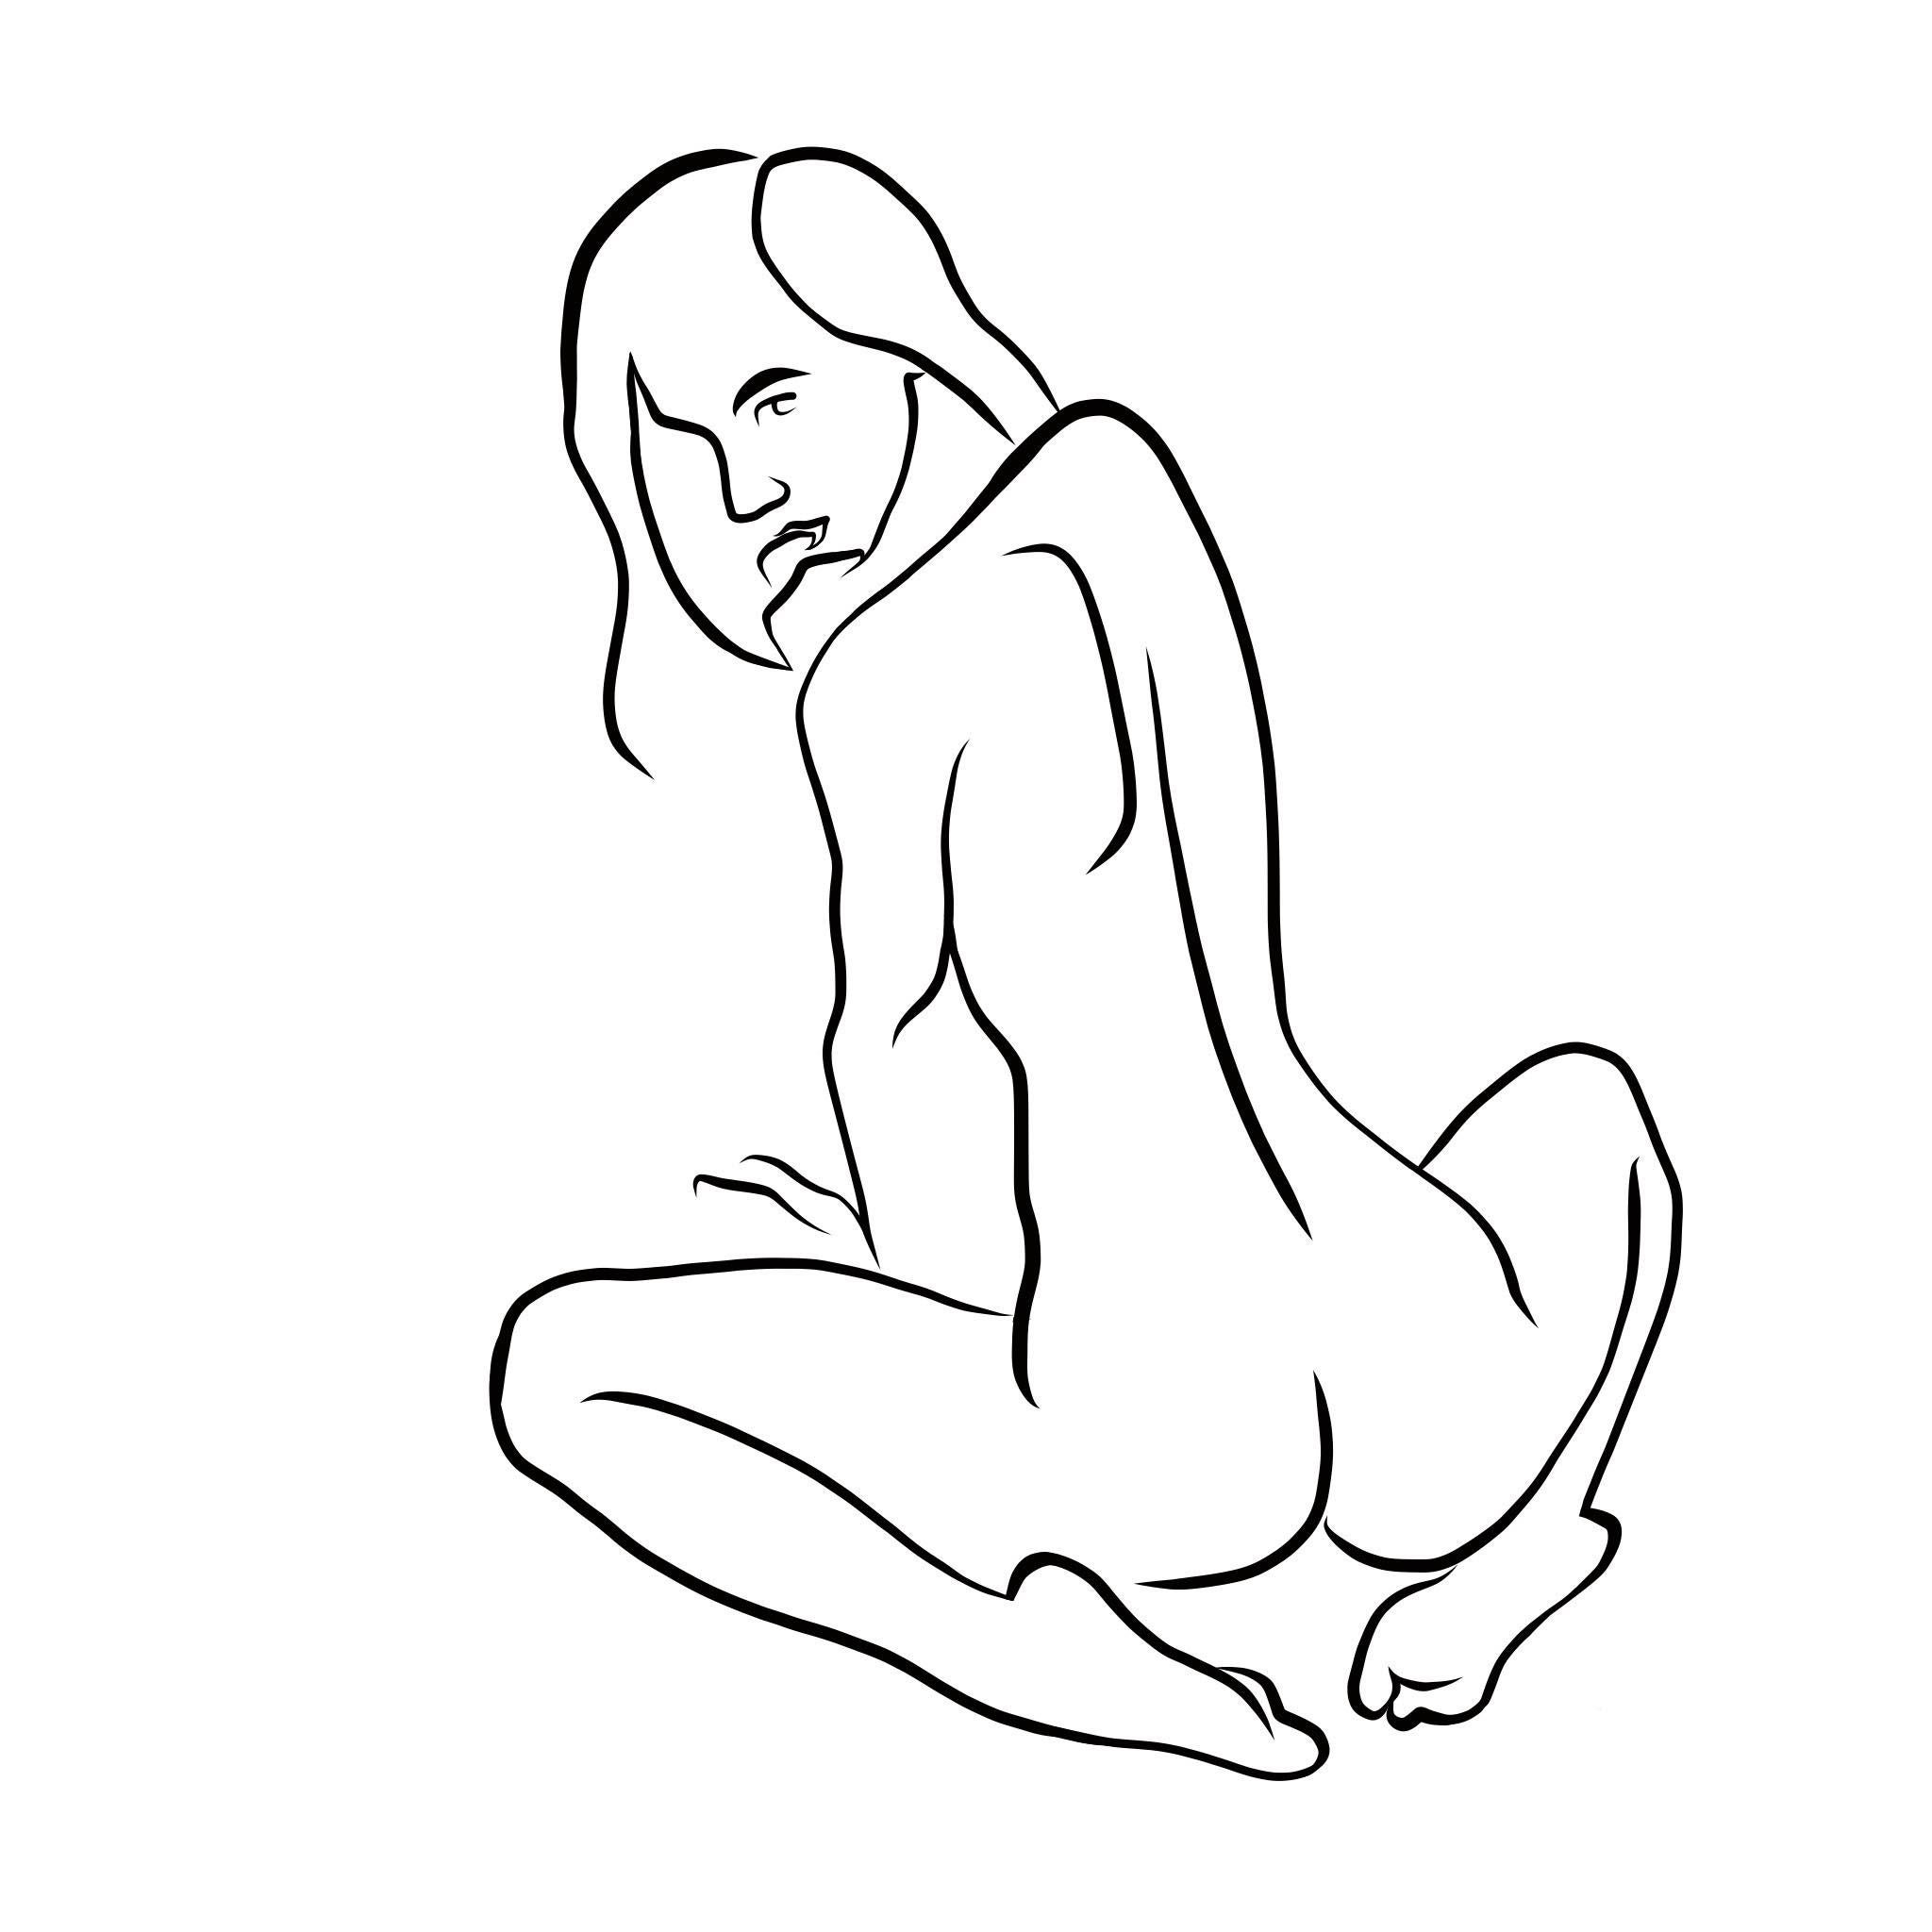 Haiku #35 - Digital Vector Drawing Seated Female Nude Woman Figure Looking Back